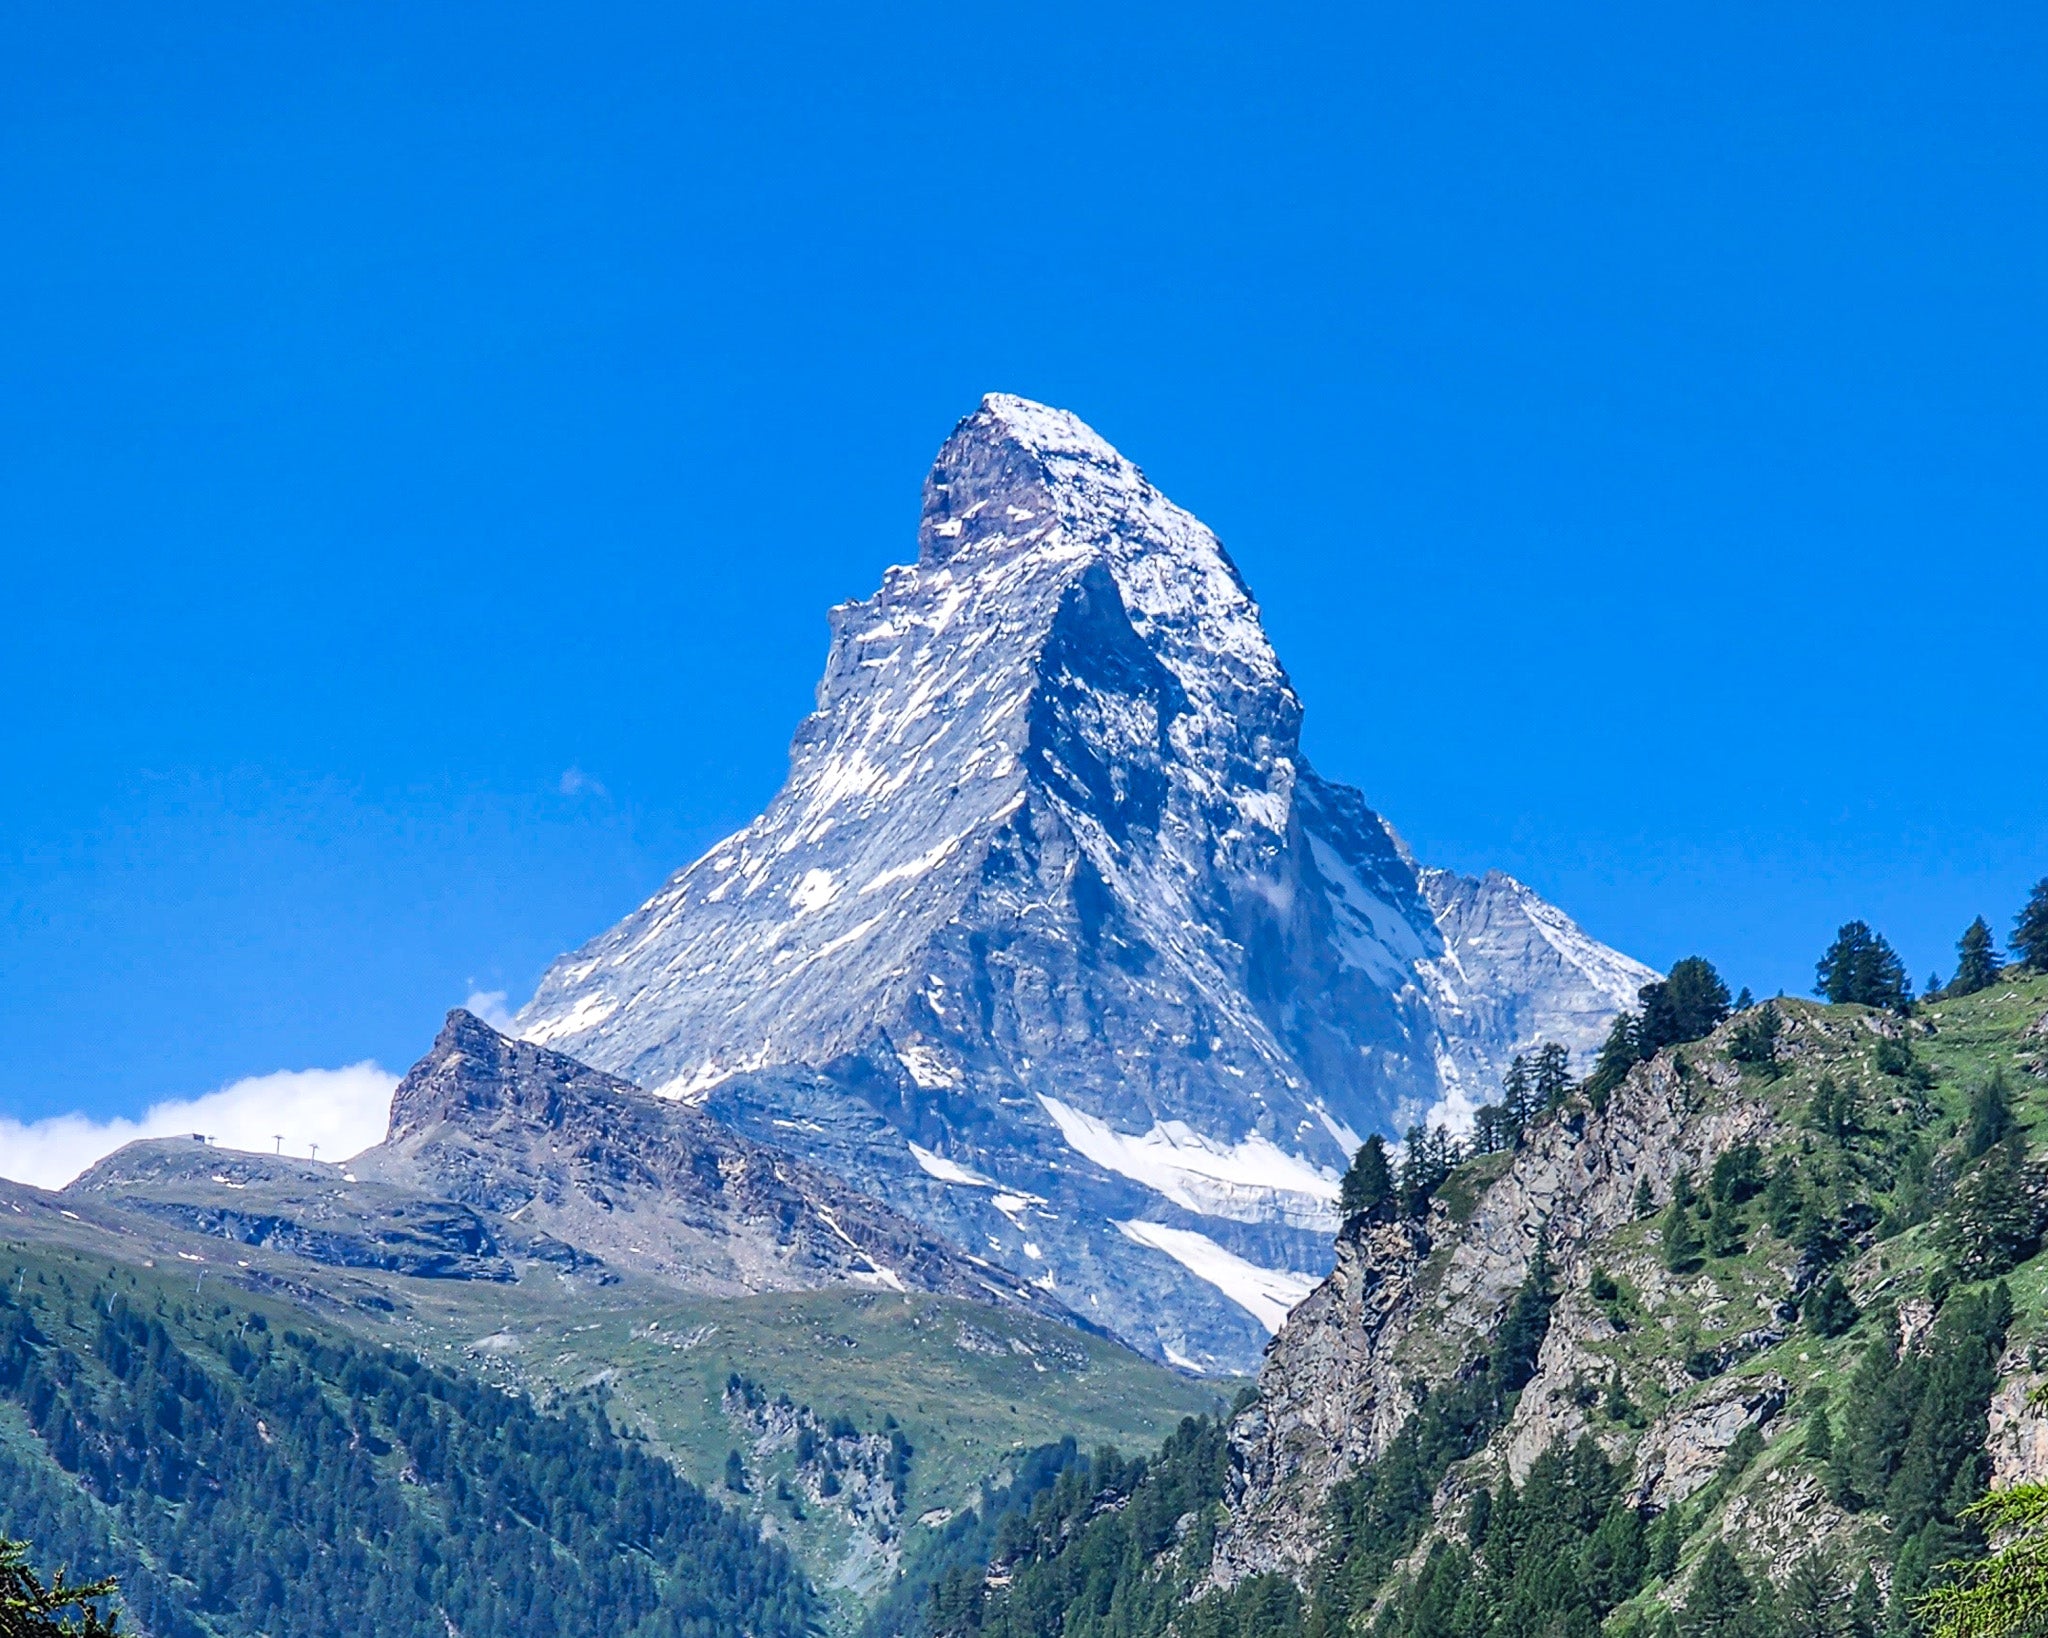 Solo Summit of the Matterhorn via Hornli Ridge